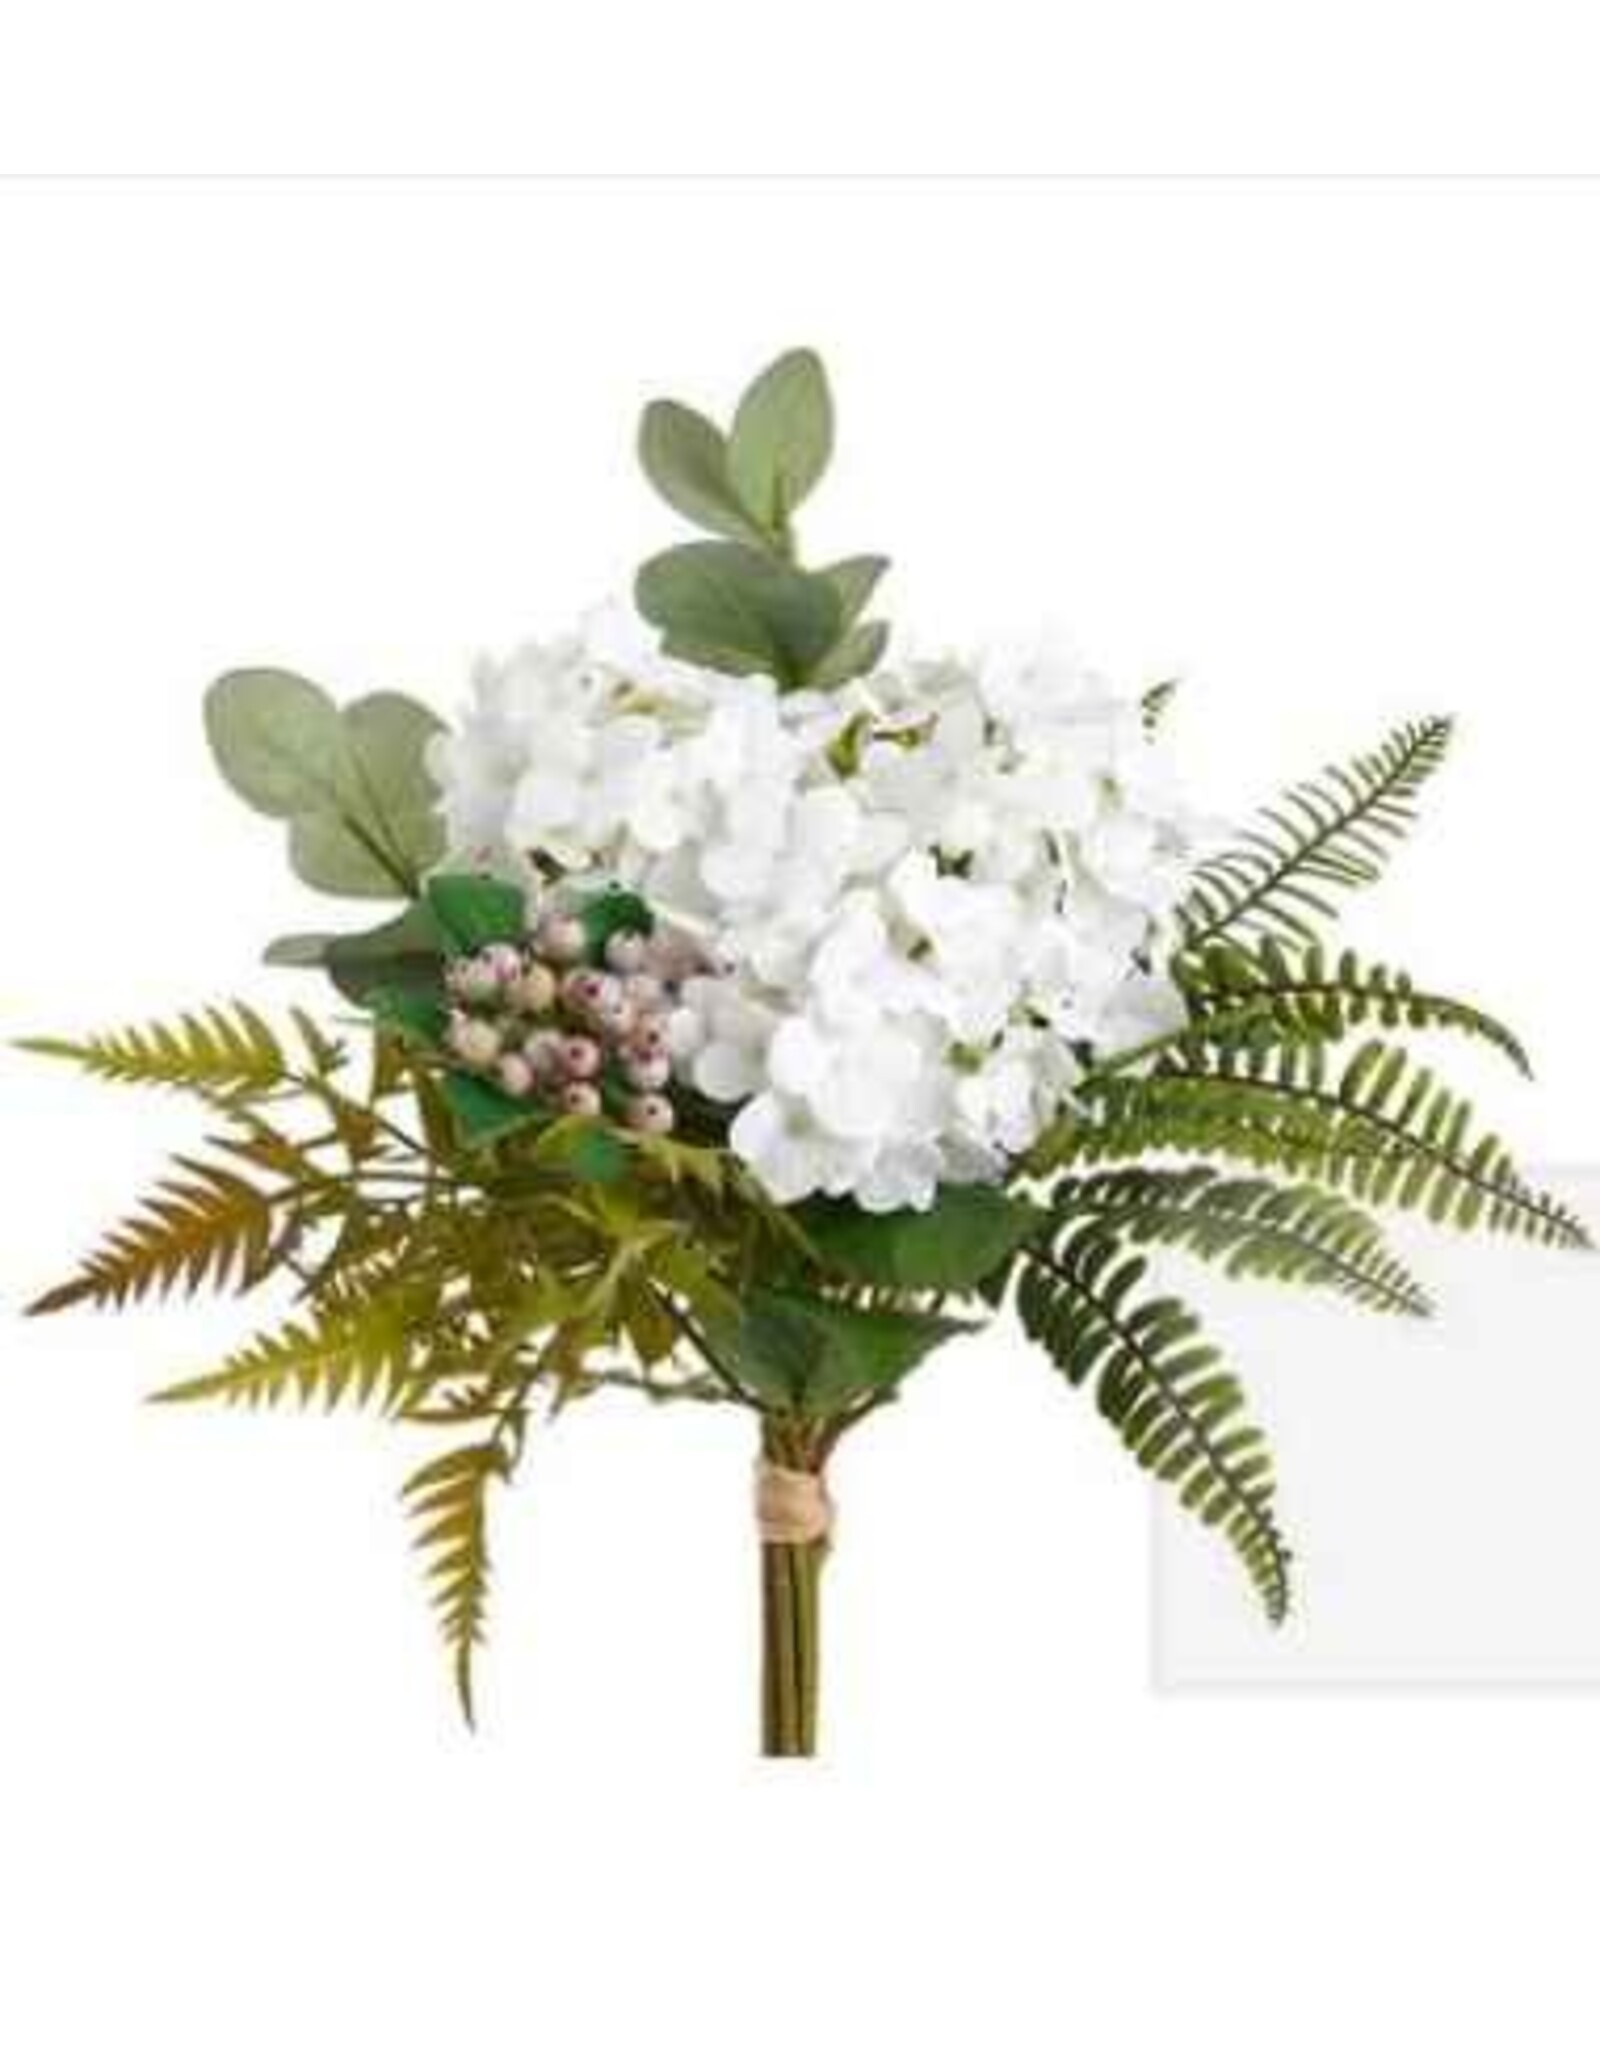 18.5 Hydrangea/Fern Bouquet White FBQ271-WH